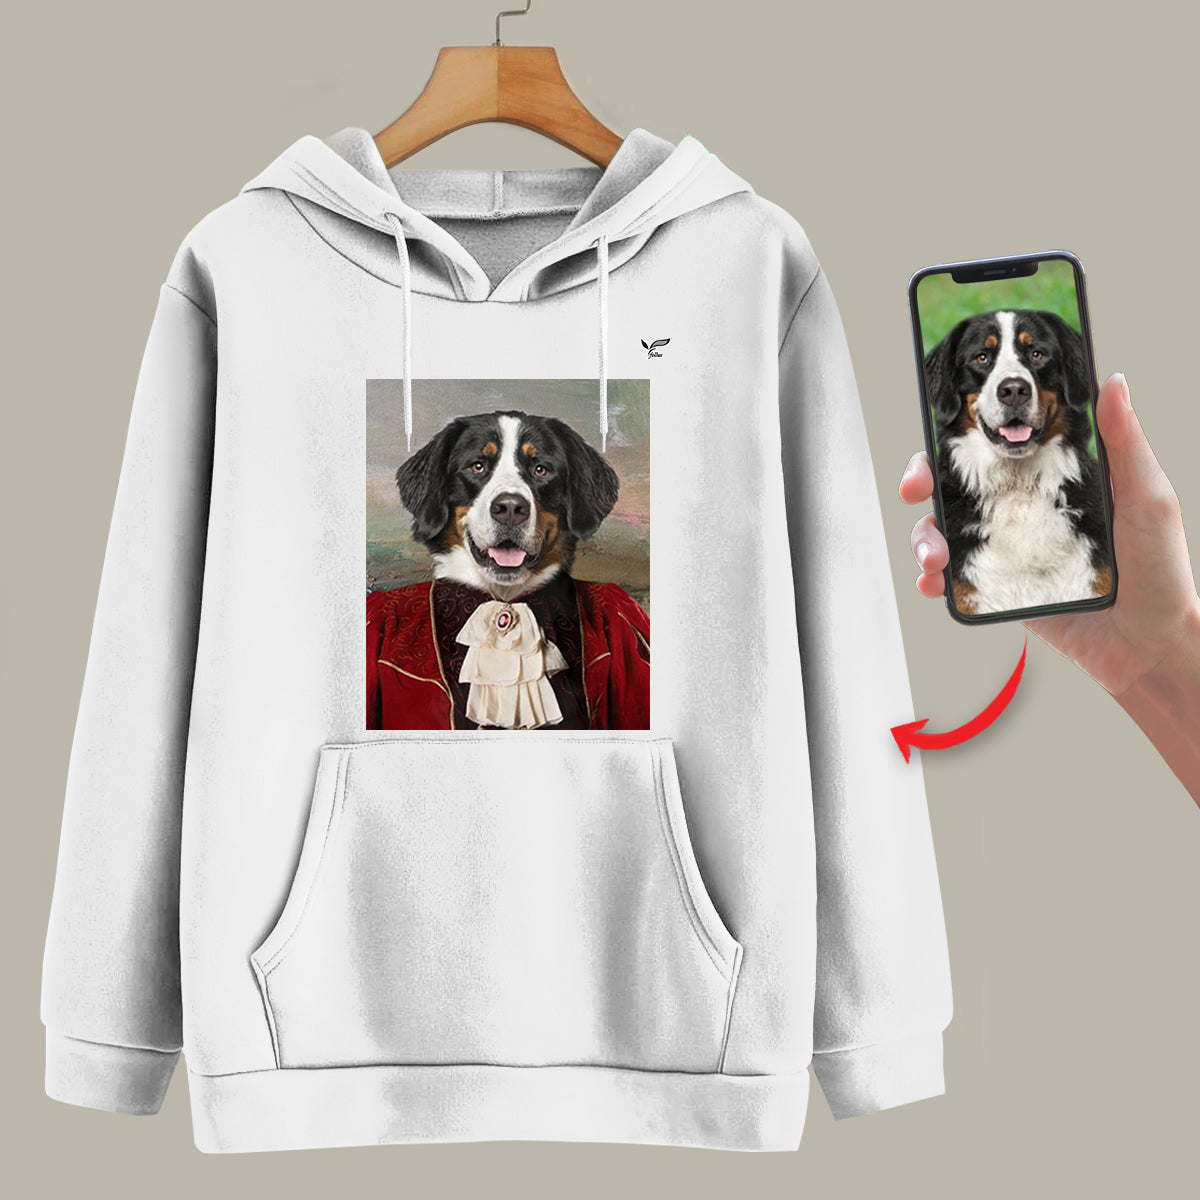 Der Aristokrat – personalisierter Kapuzenpullover mit dem Foto Ihres Haustieres